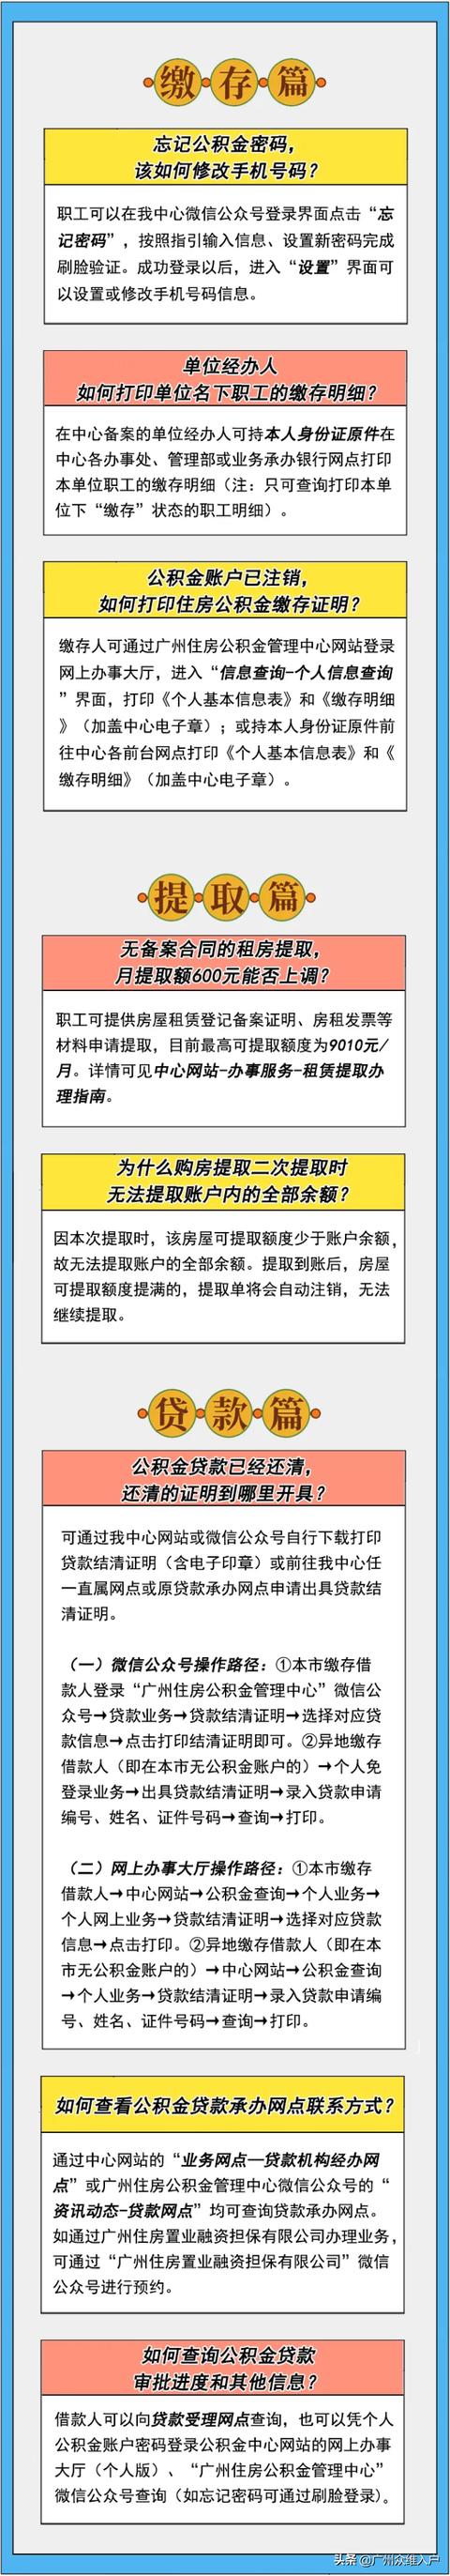 广州住房公积金常见问题解答网站「广州住房公积金电话」